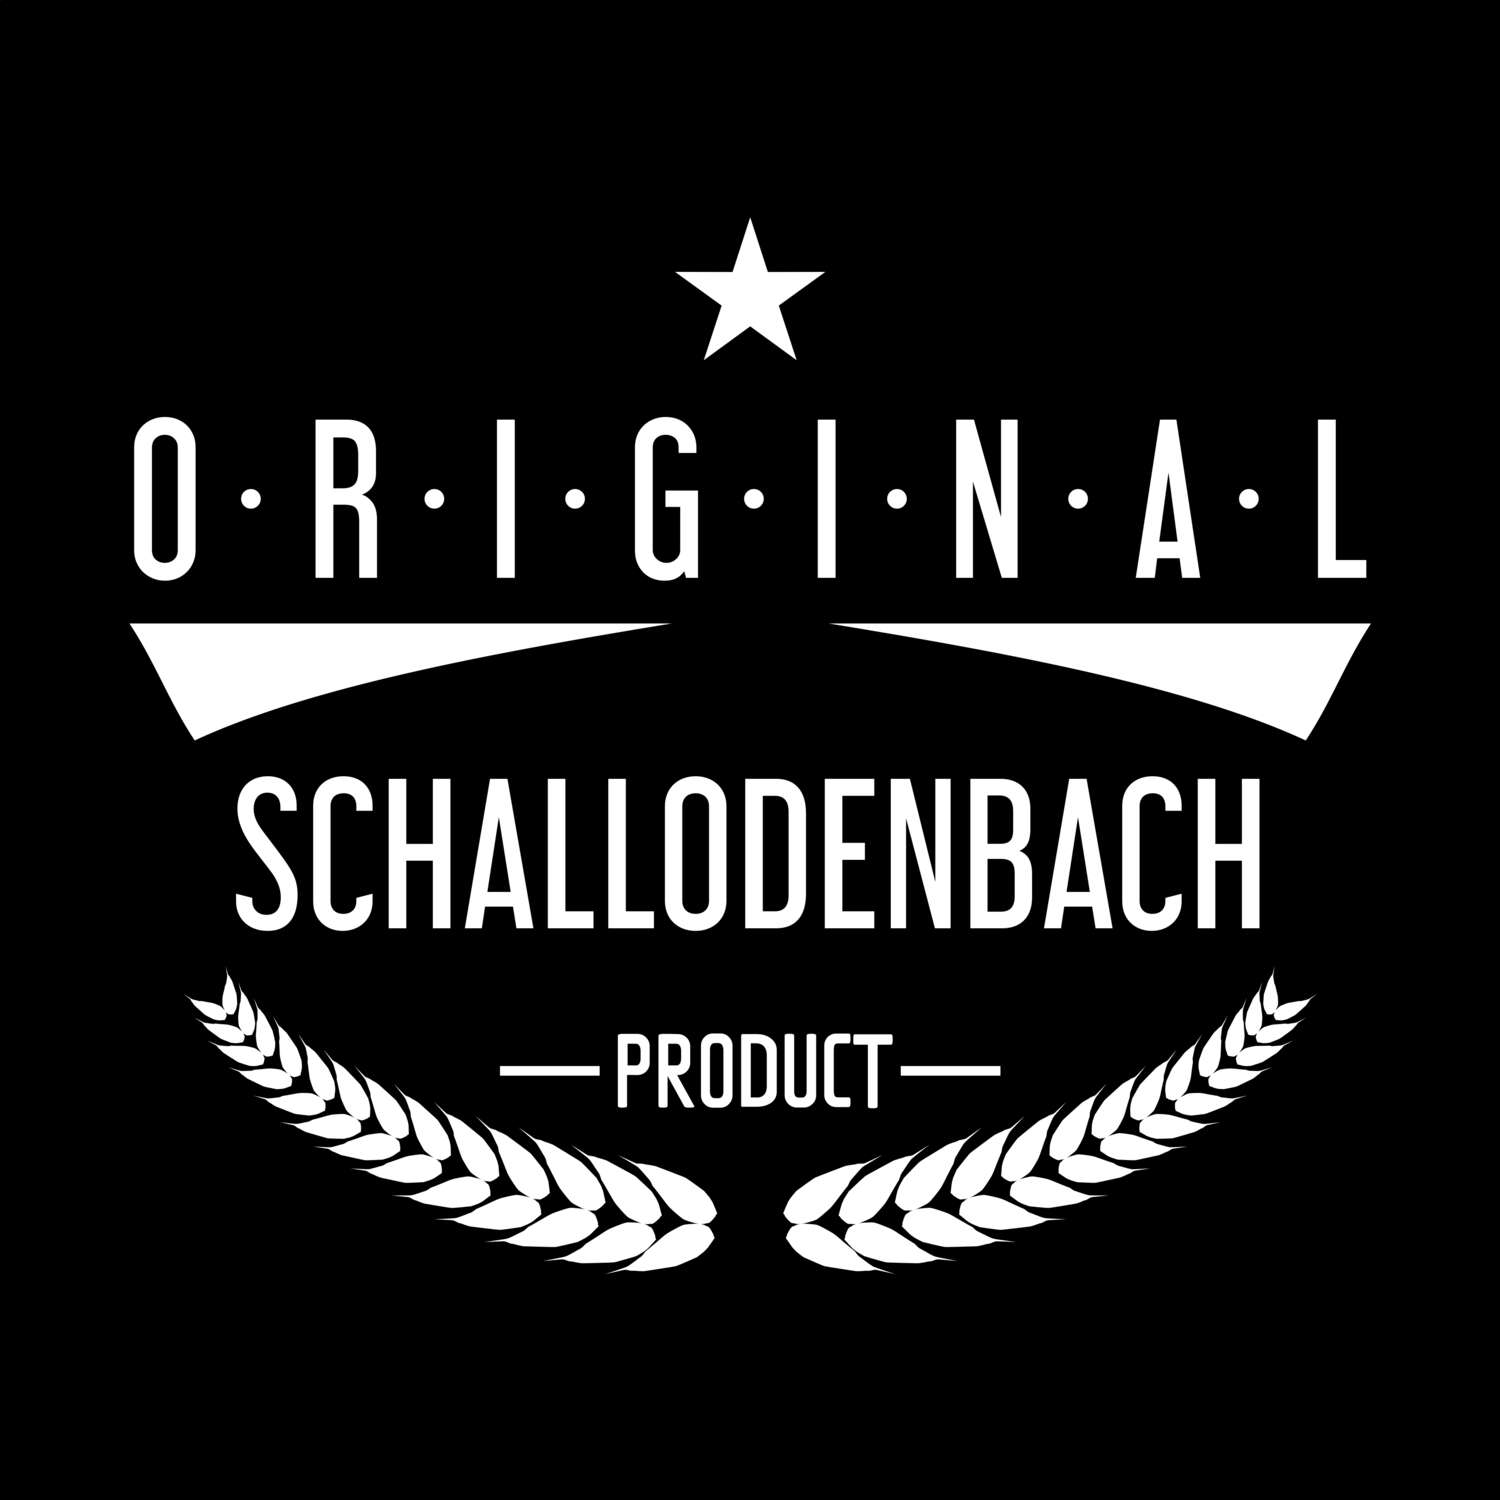 Schallodenbach T-Shirt »Original Product«